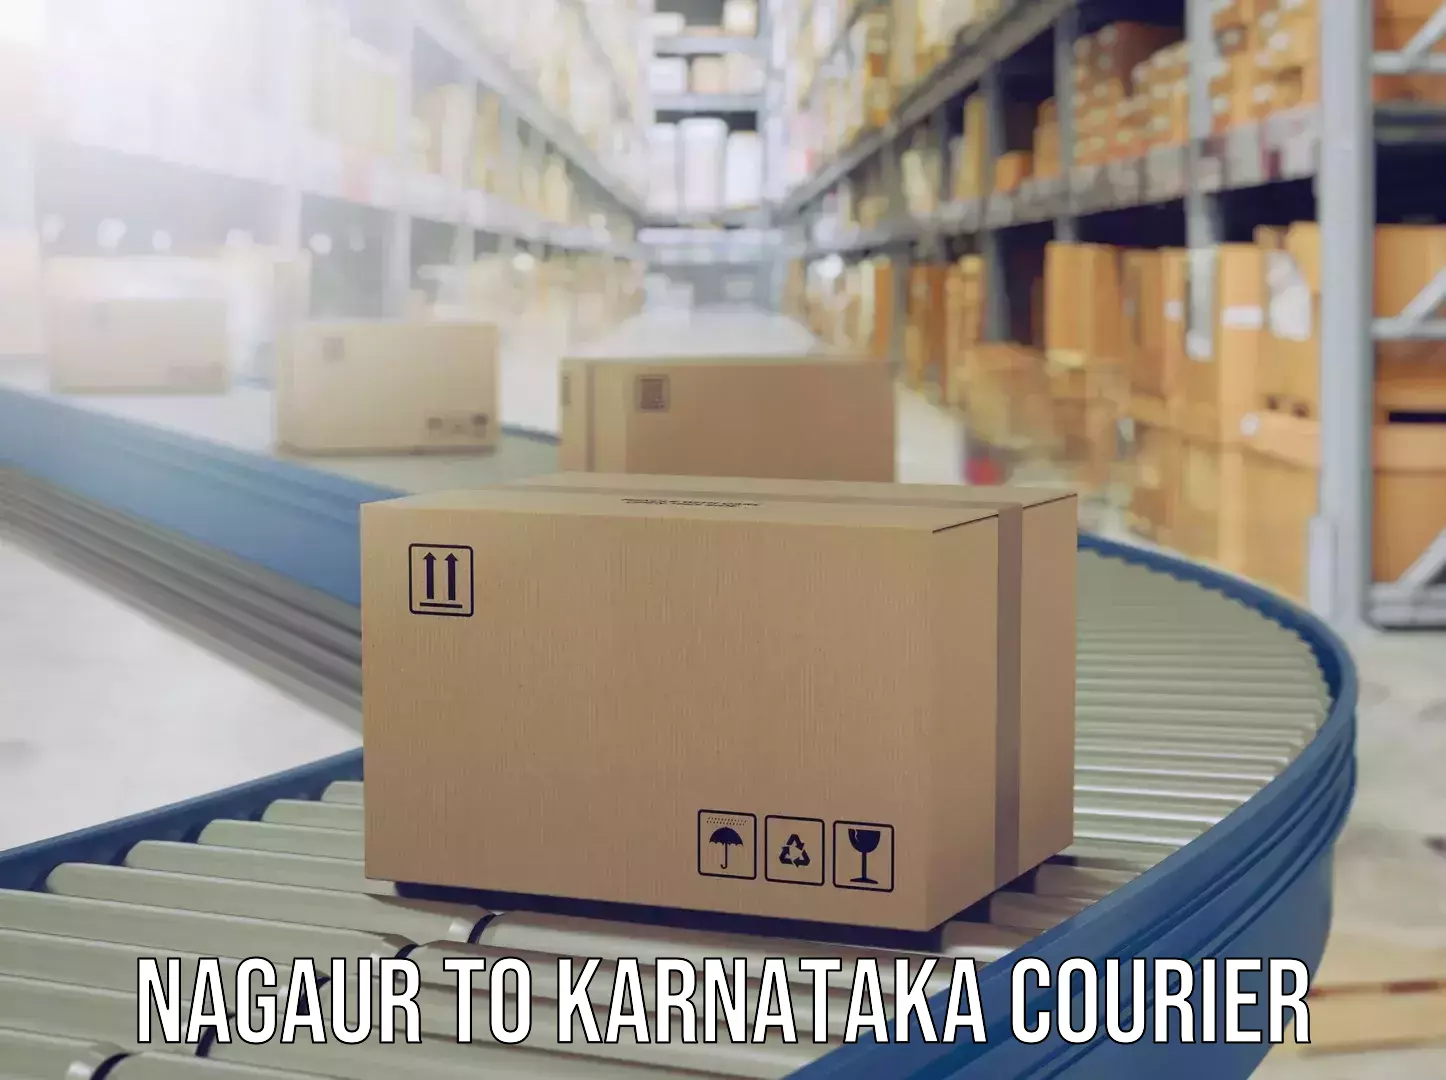 Express baggage shipping Nagaur to Karnataka